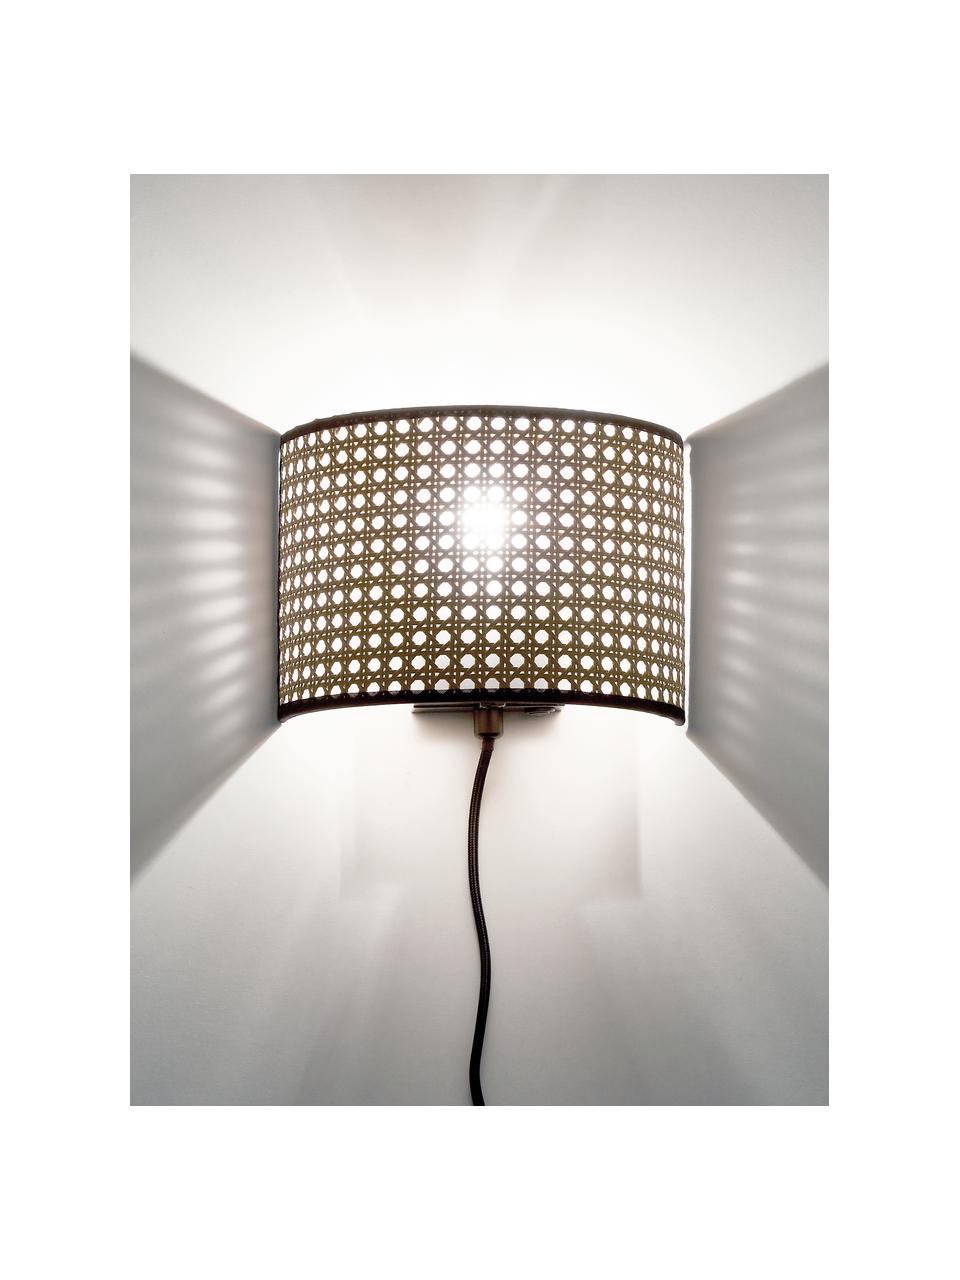 Wandlamp Vienna van Weens vlechtwerk met stekker, Lampenkap: kunststof, Beige, zwart, B 22 x H 16 cm